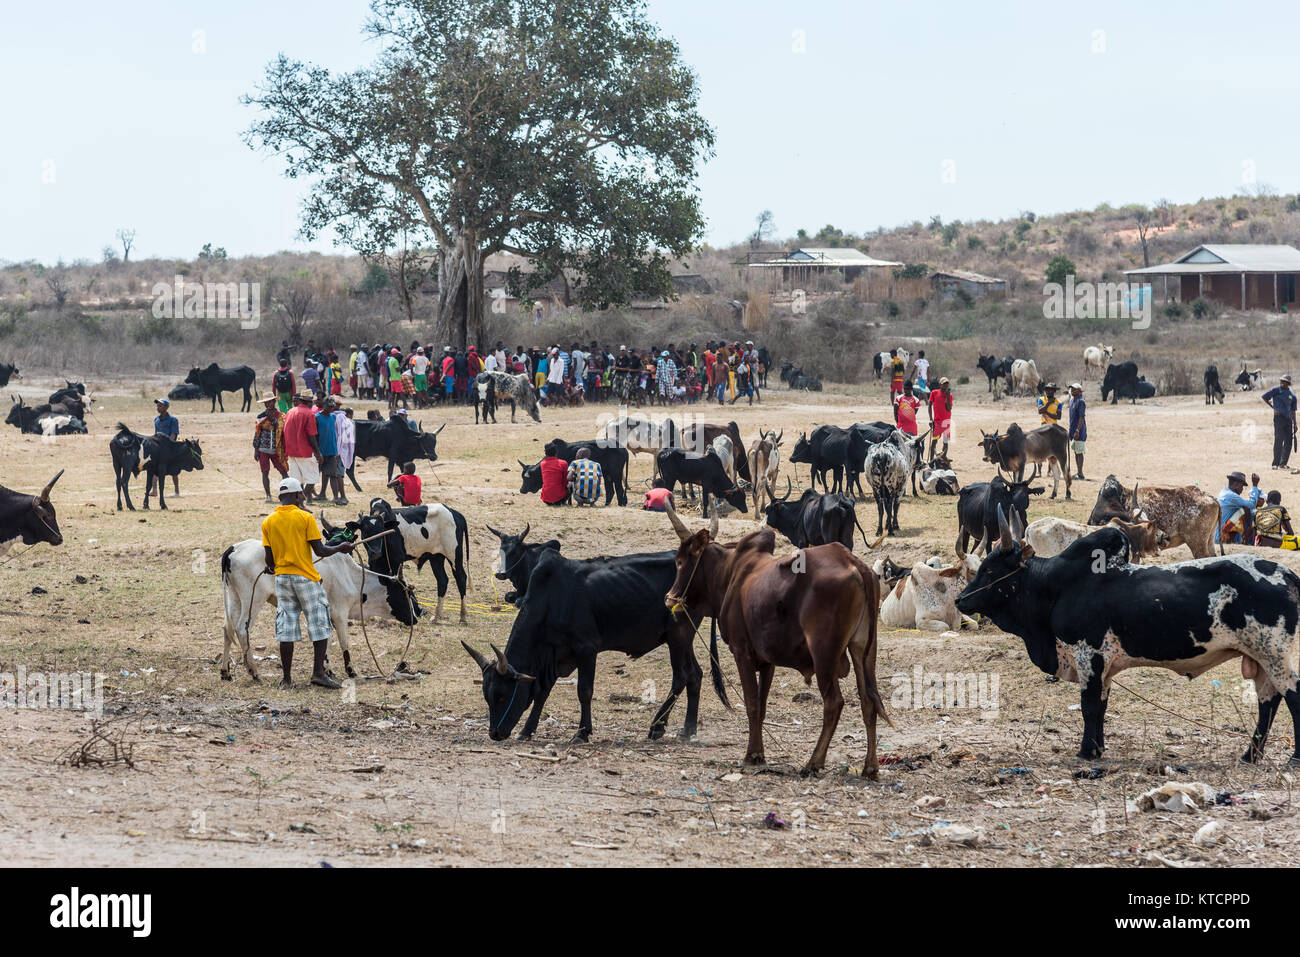 Marché de l'élevage la vente de zébu, une race locale de bovins, près de Morondava, Madagascar, Afrique. Banque D'Images